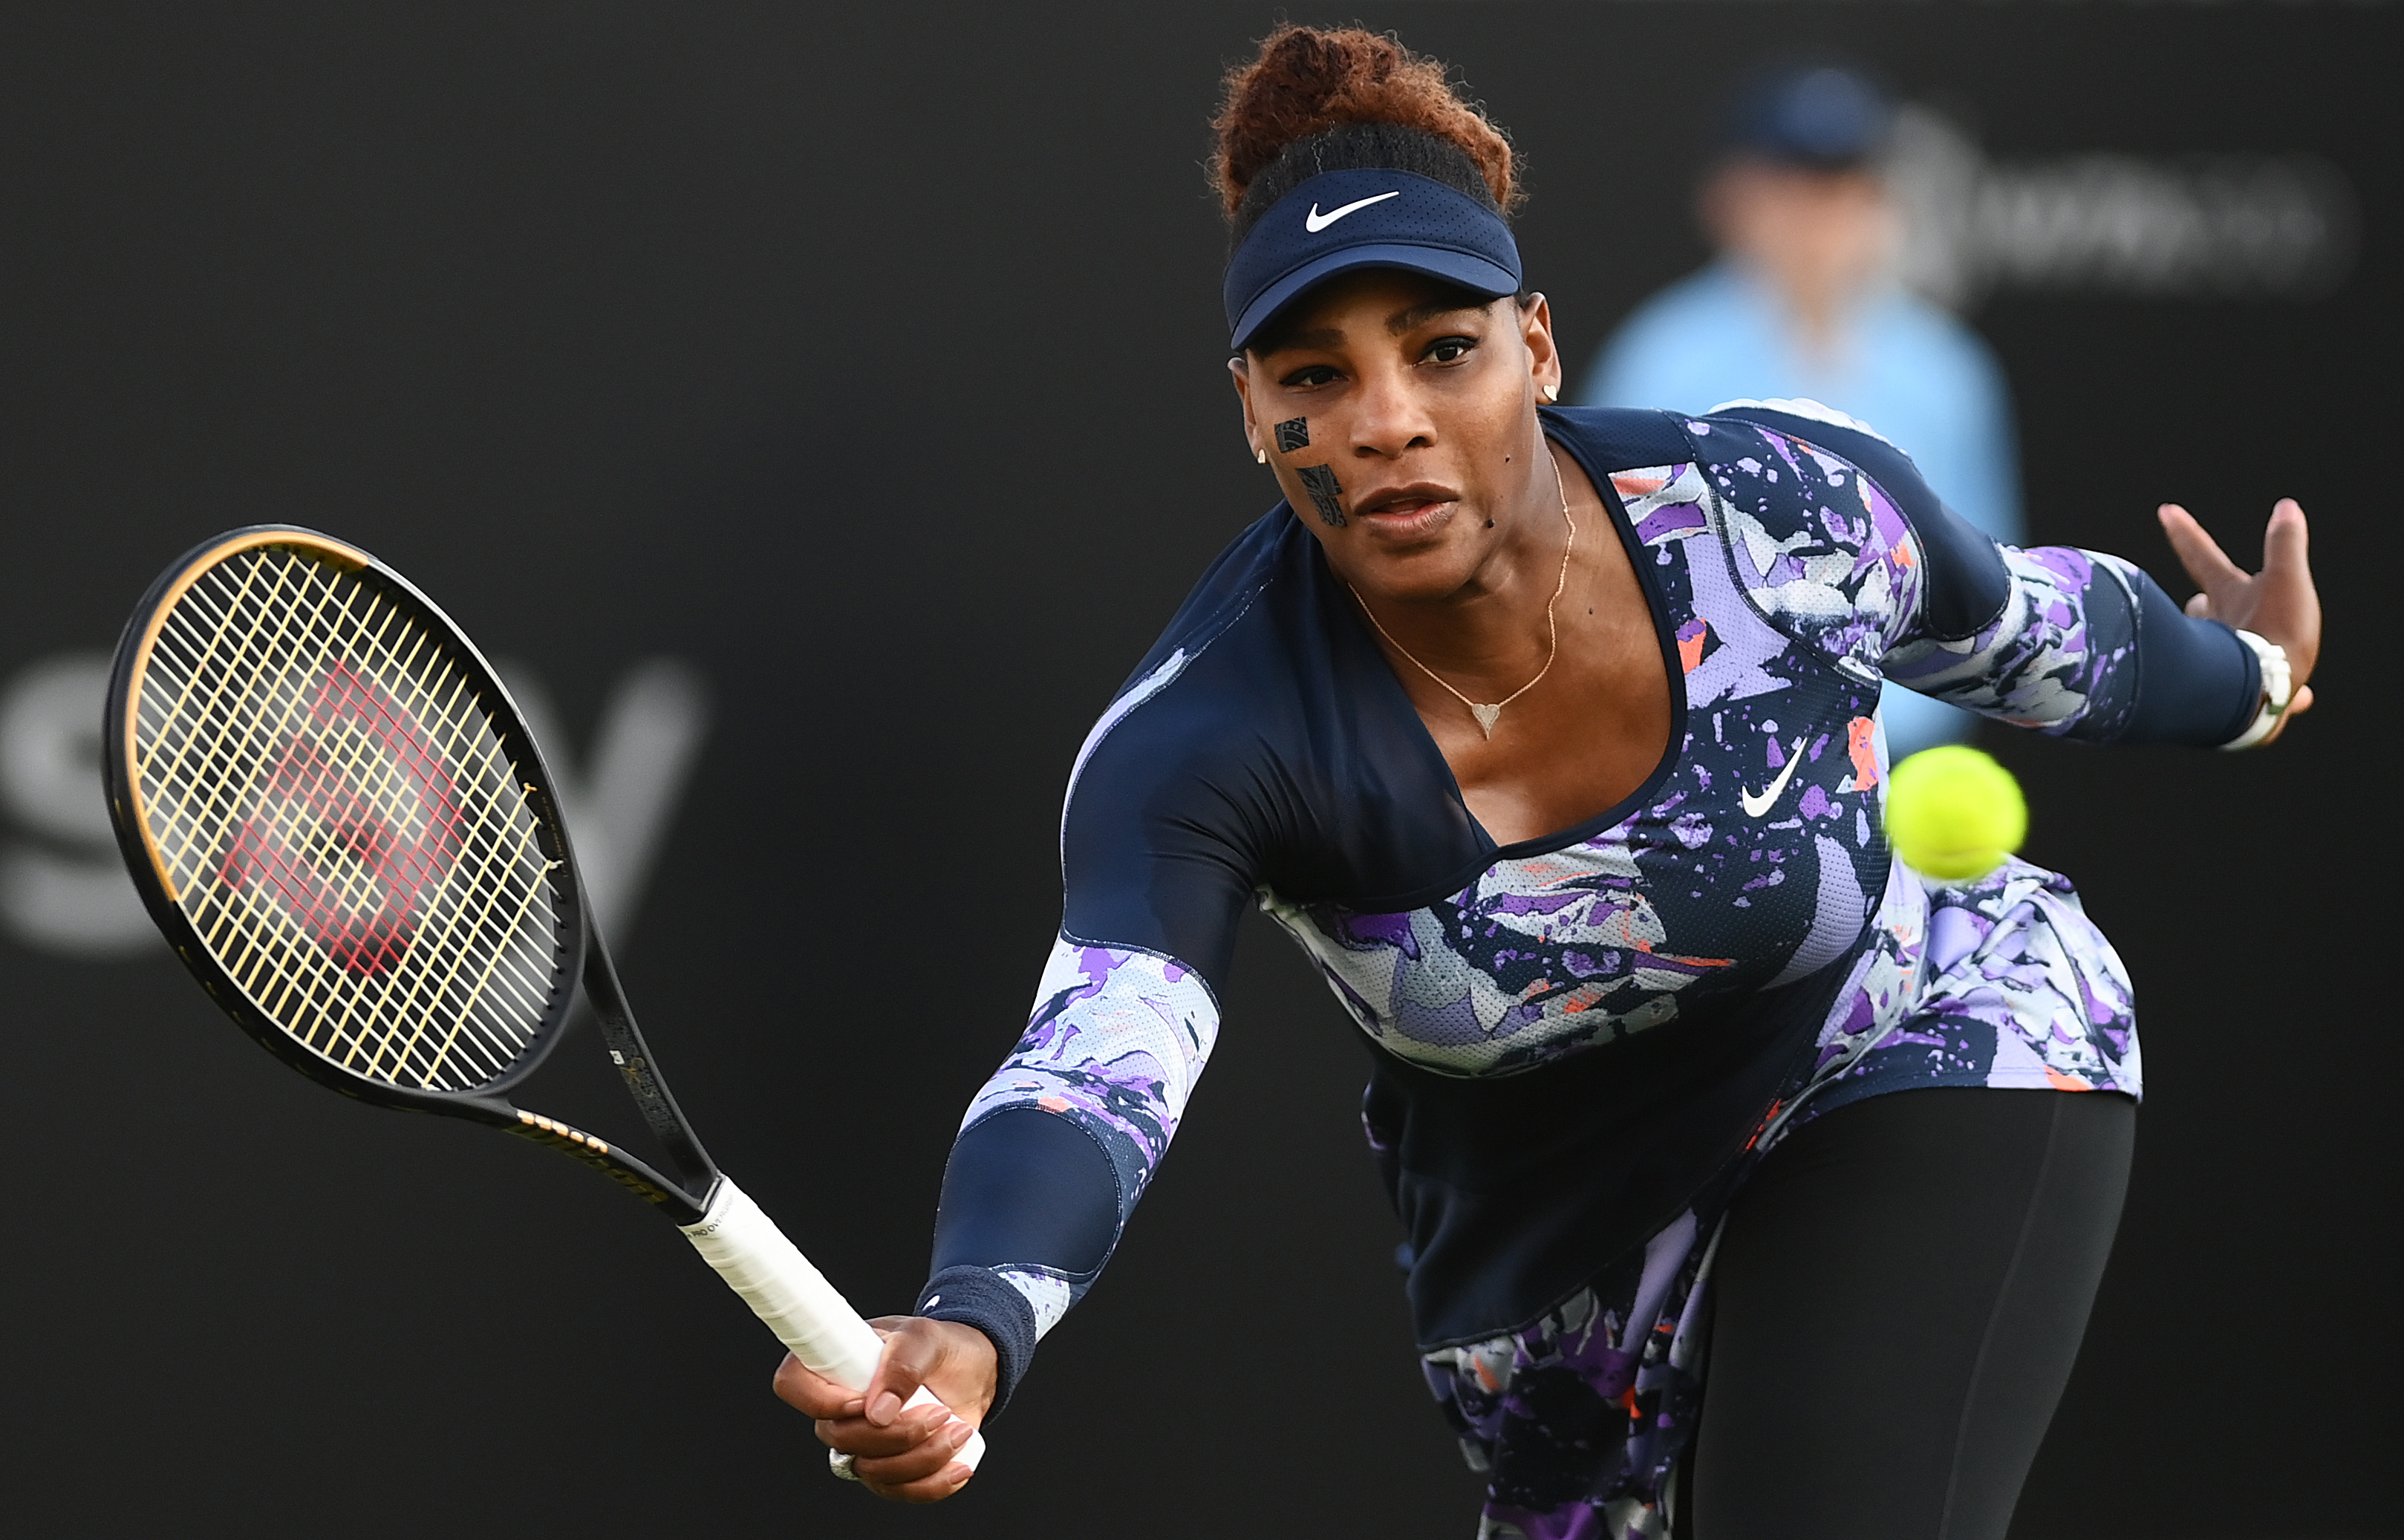 Berita tenis, Wimbledon 2022 |  Serena Williams memenangkan pertandingan pertama kembali setelah cedera, Eastbourne ganda